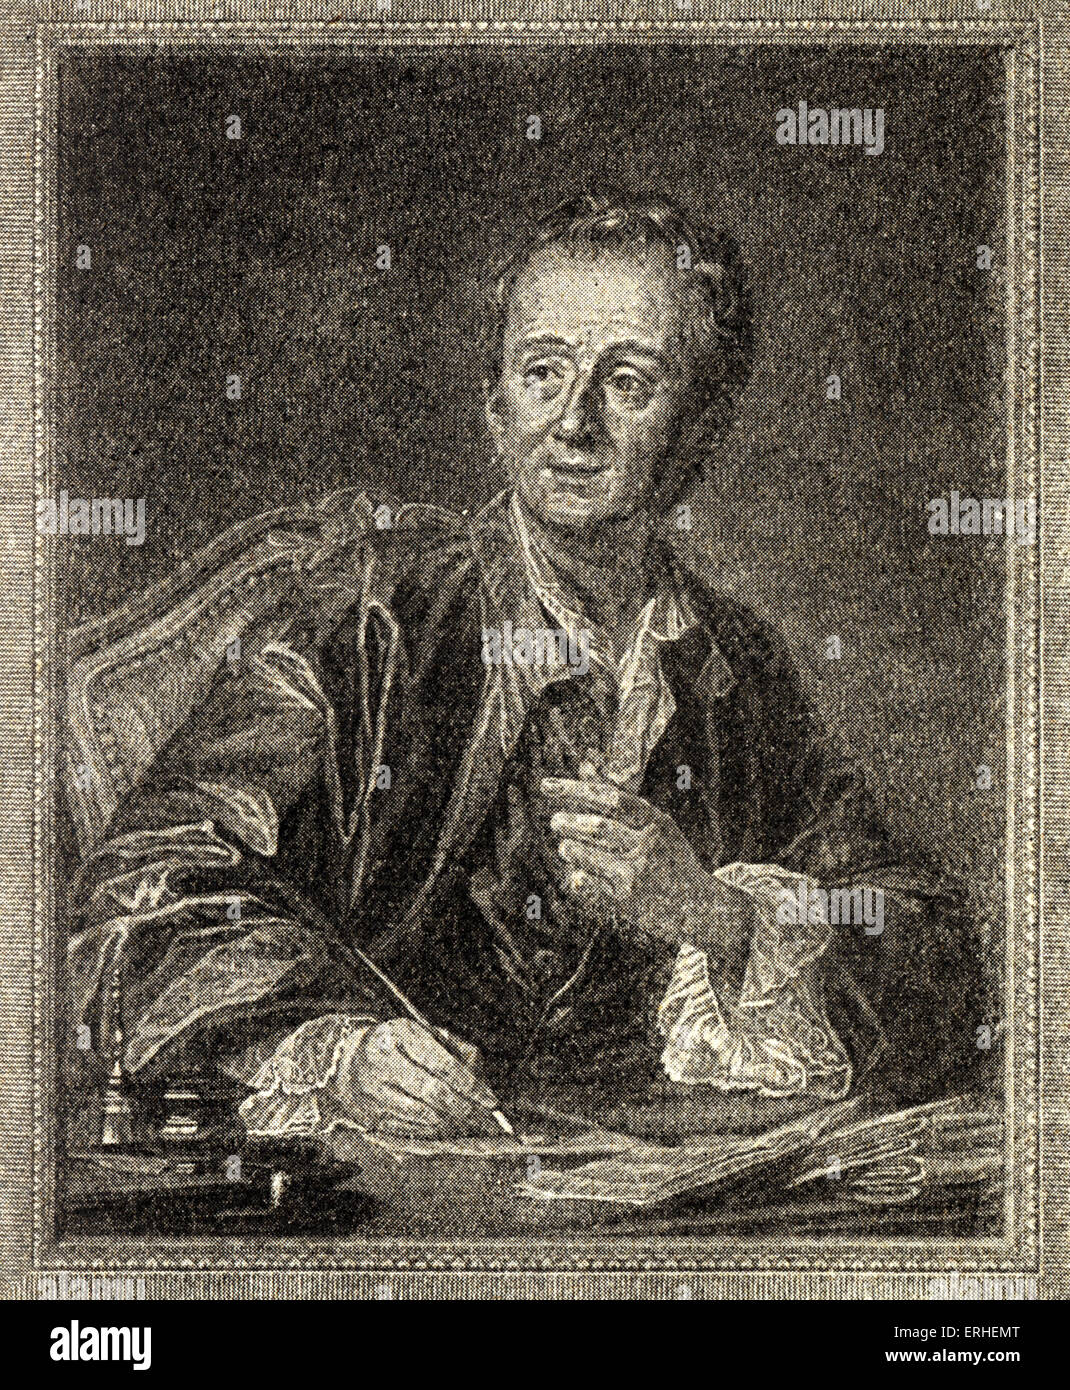 Denis Diderot - écrivain et philosophe des Lumières Françaises et directeur général de la célèbre Encyclopedia (Encyclopédie). Banque D'Images